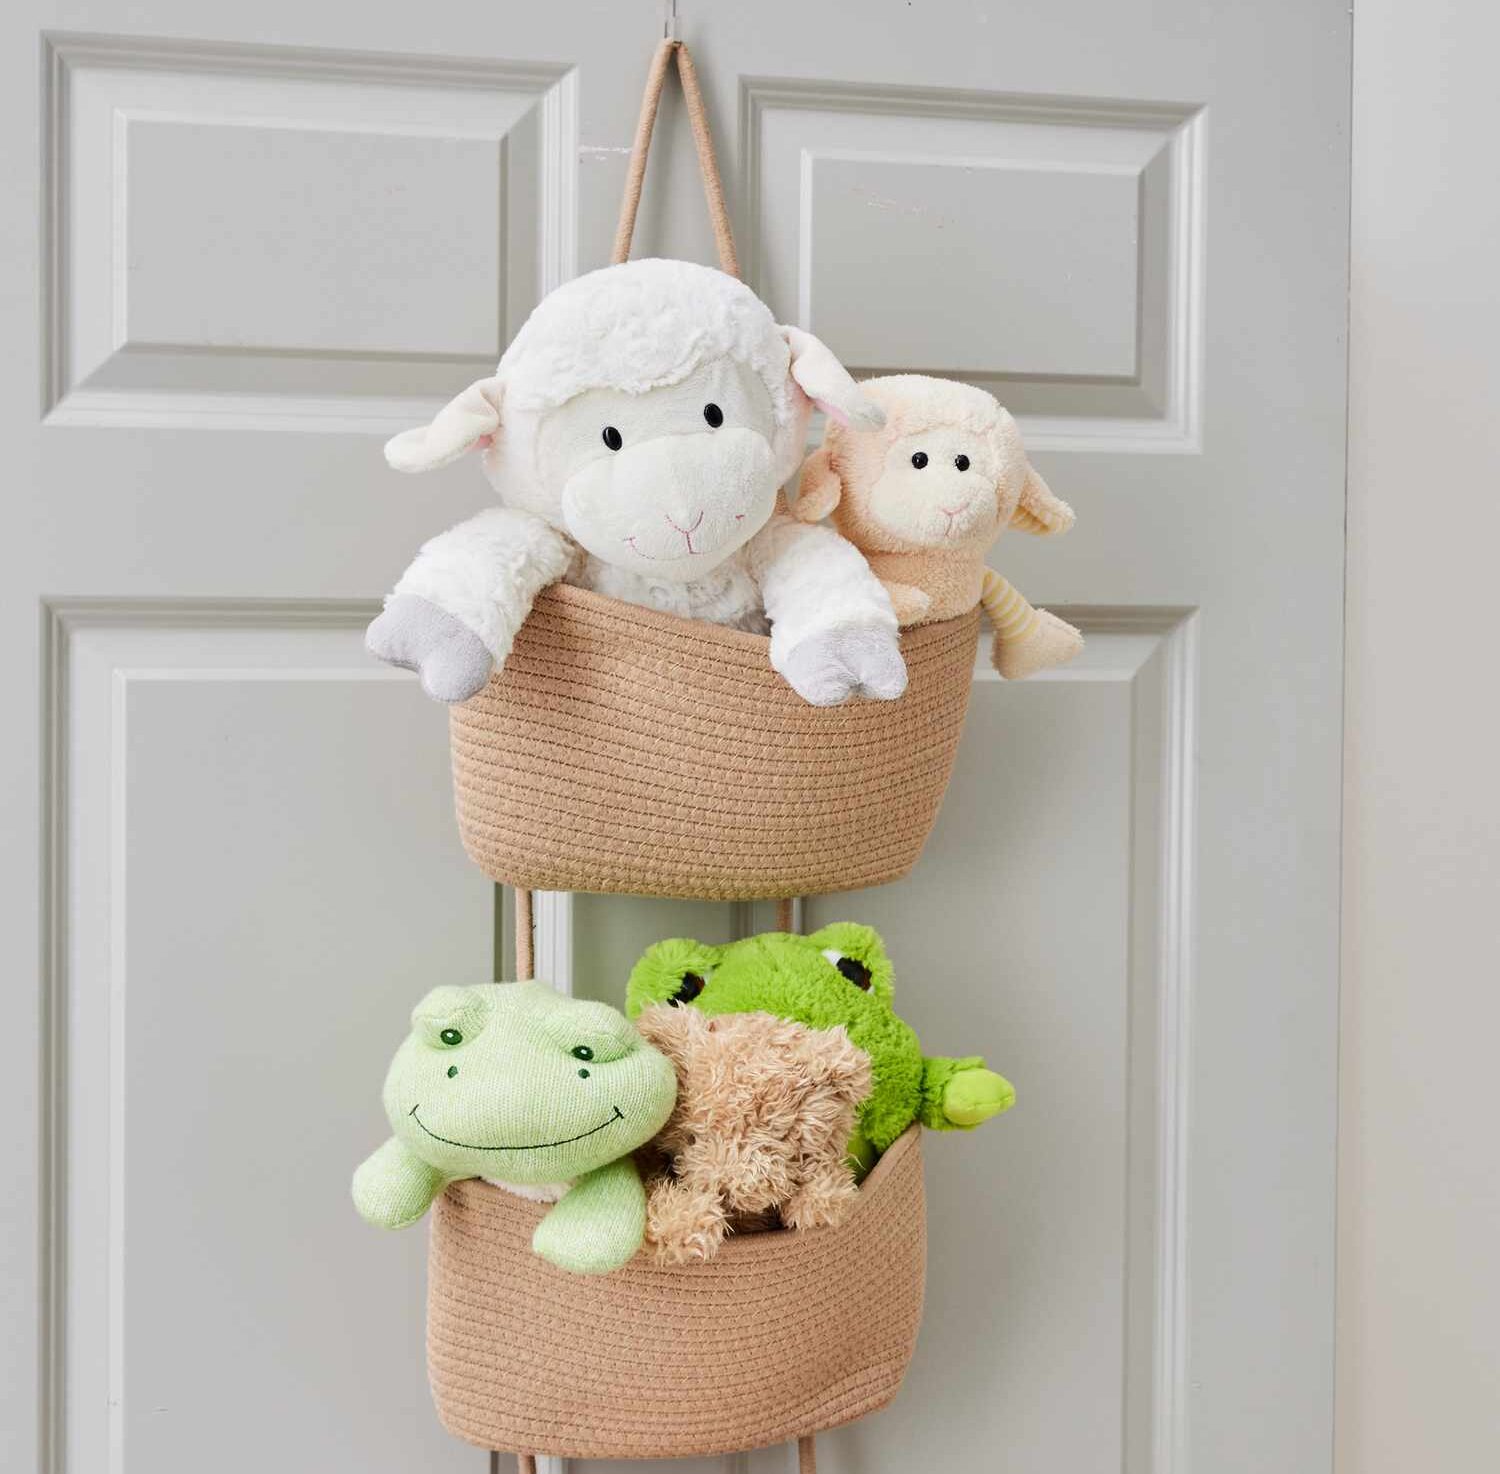 Stylish hanging baskets Toy storage ideas